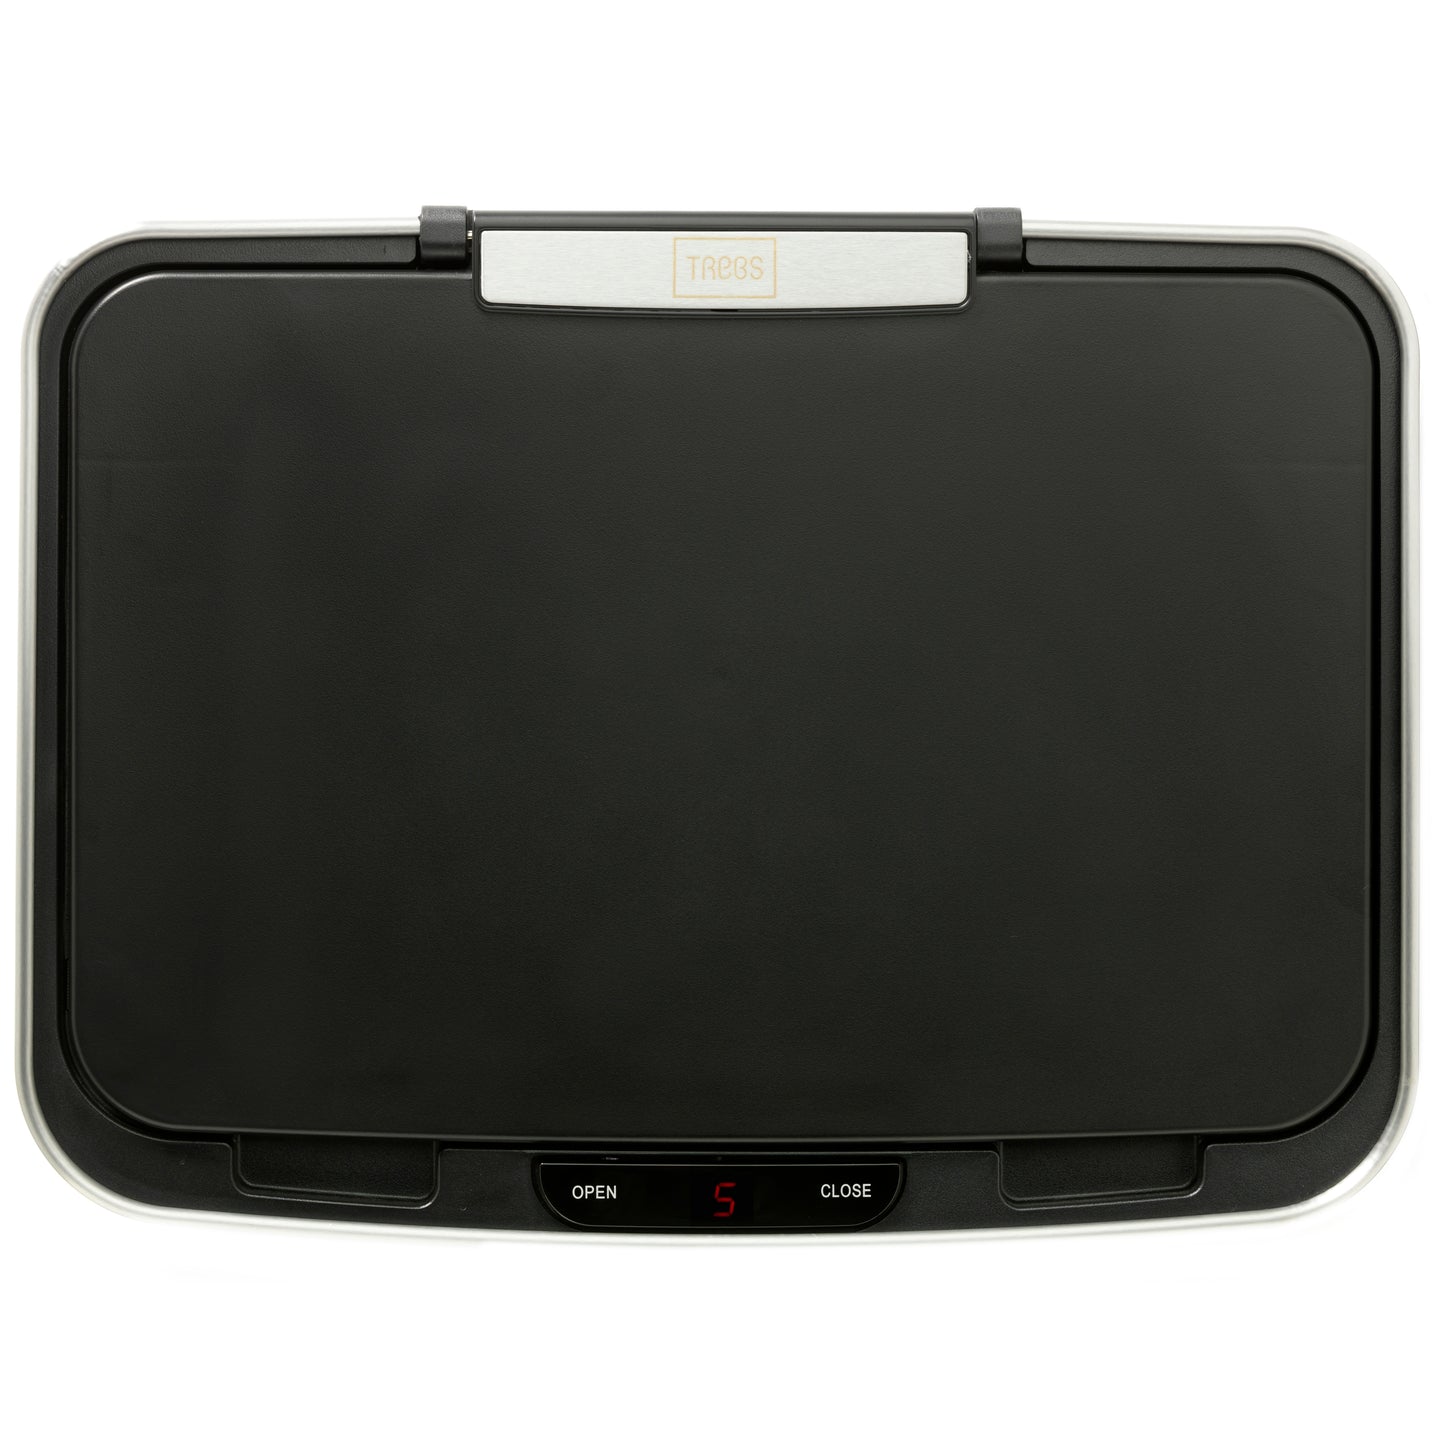 Trebs 99359 - Waste Bin / Comfortliving 50l with infrared sensor and bin bag holder